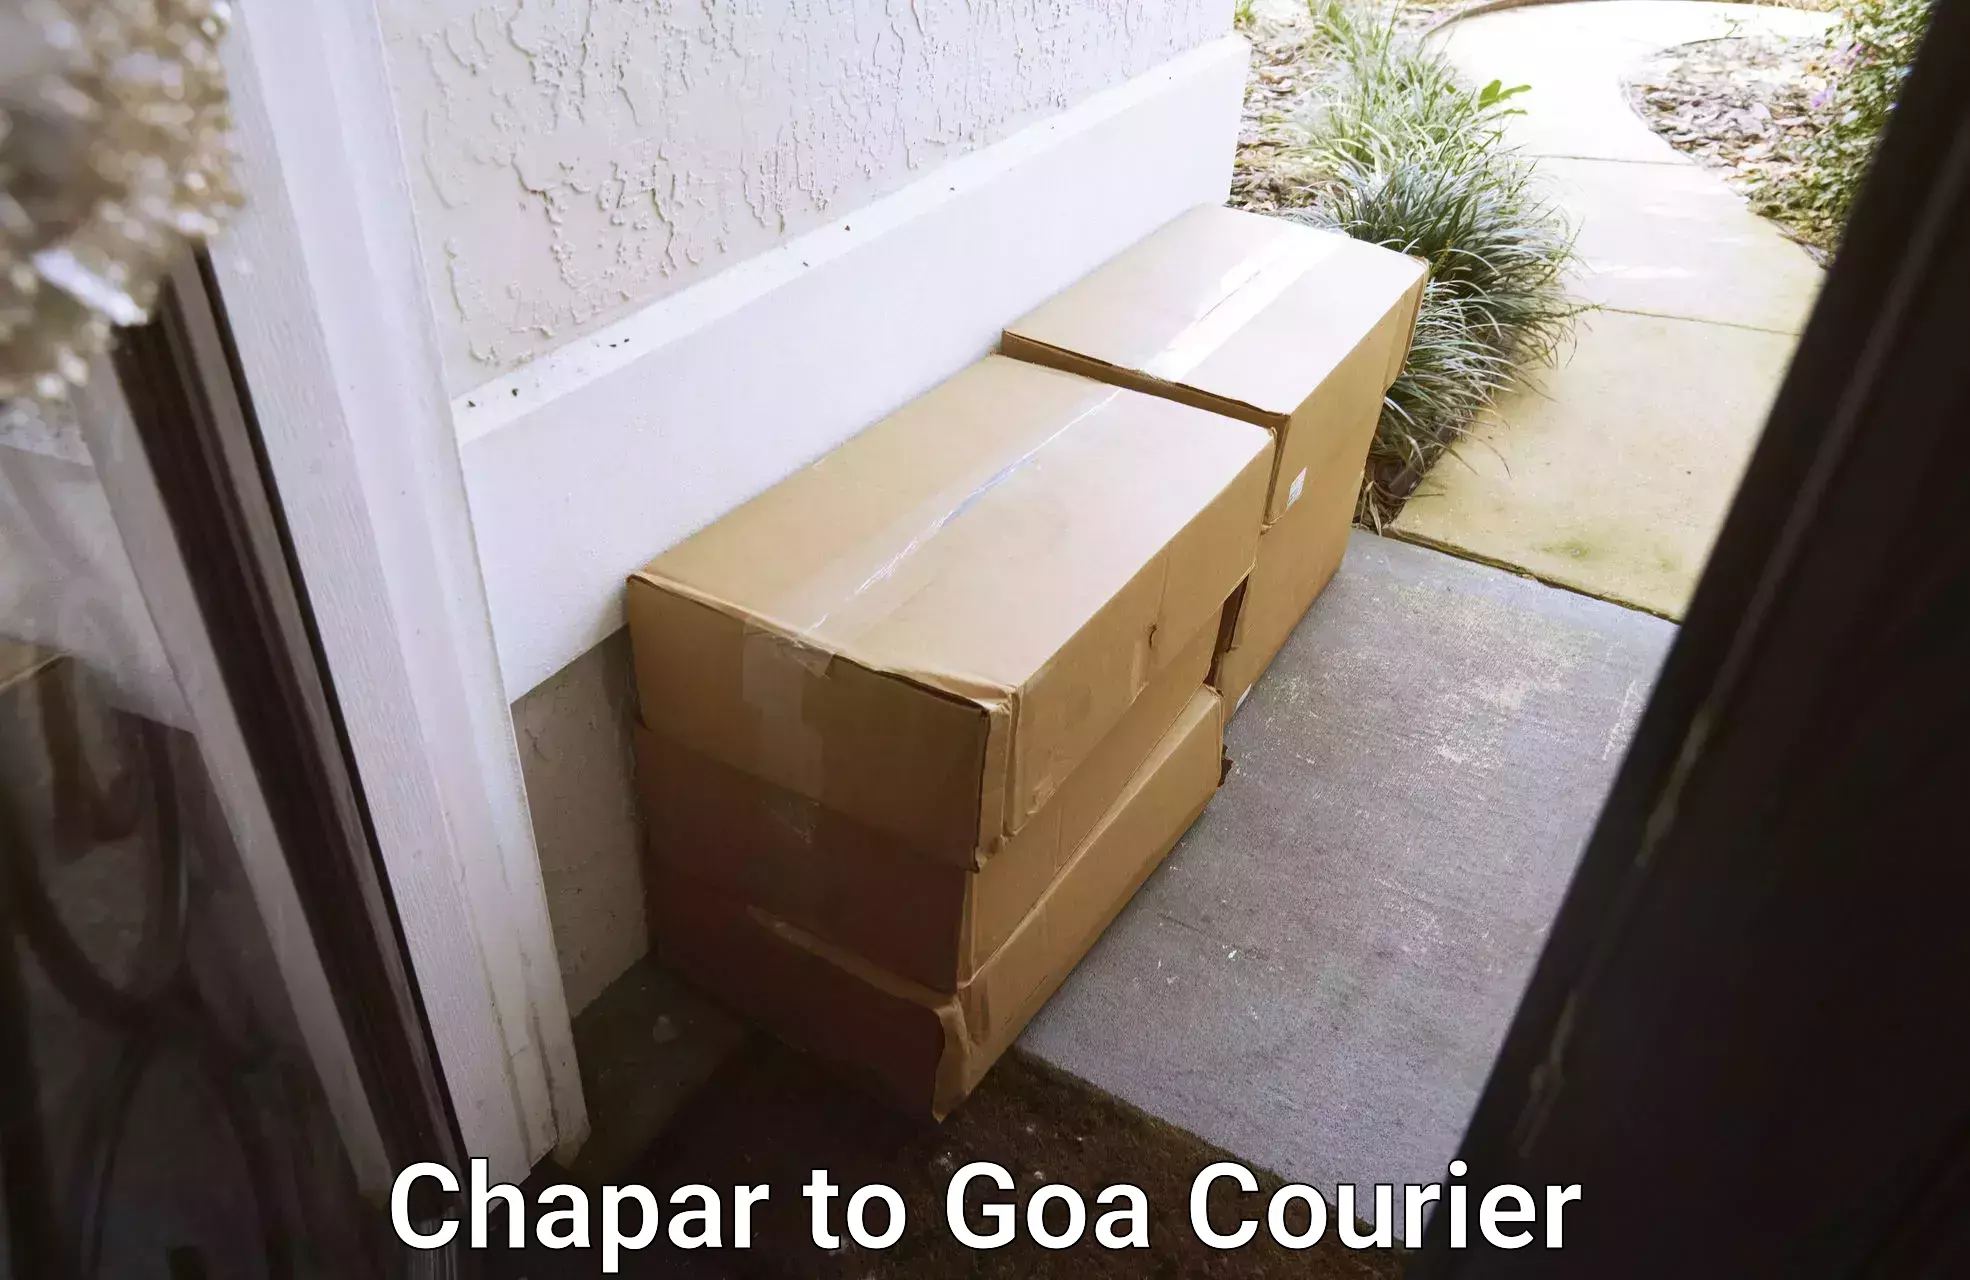 Air courier services Chapar to Ponda